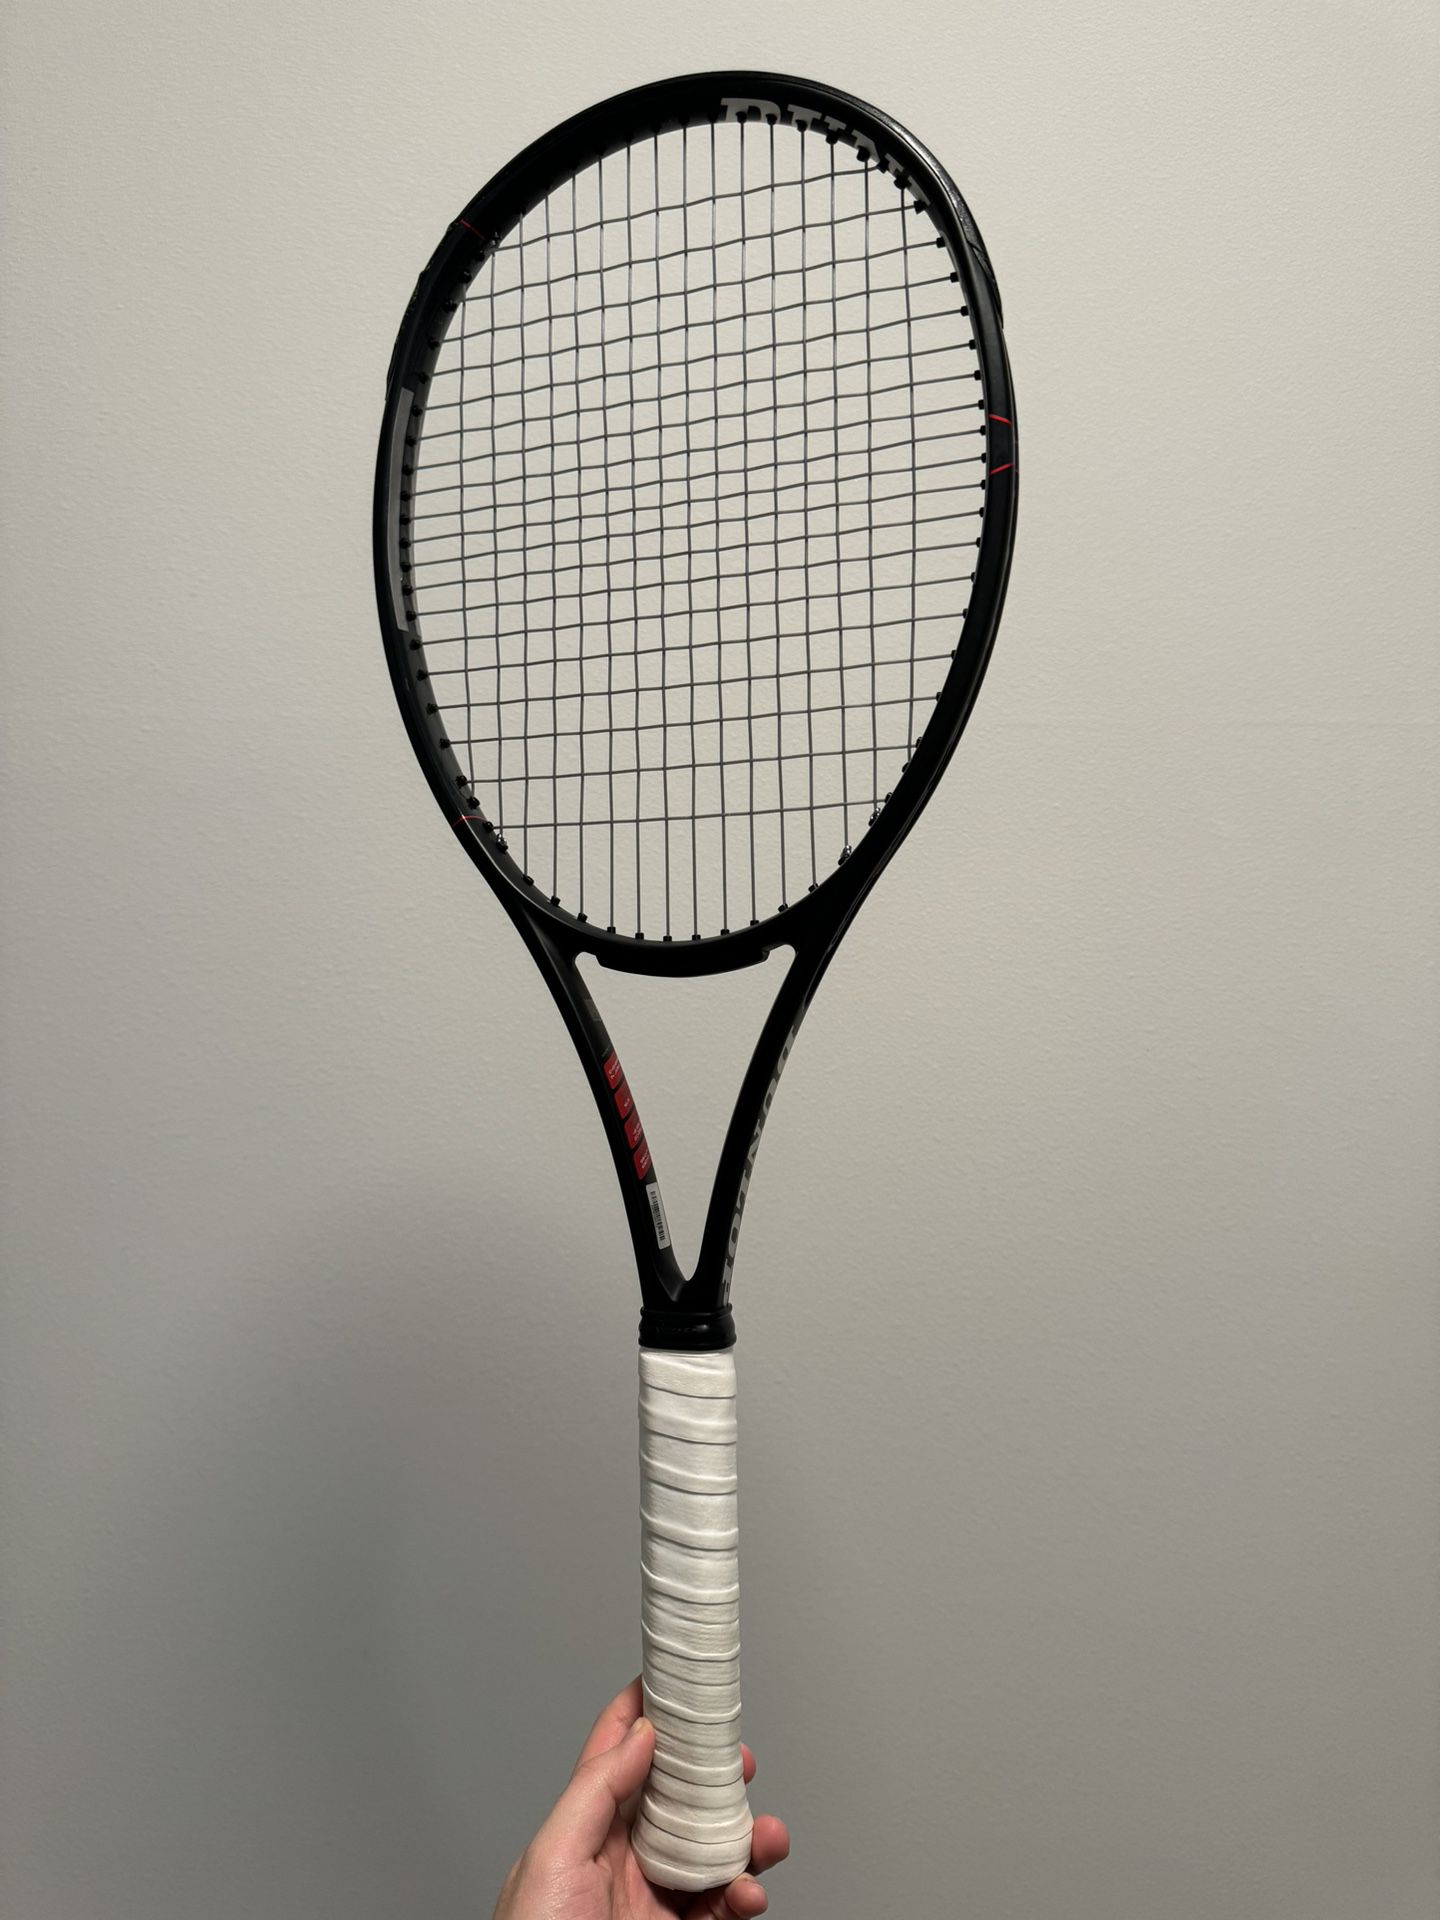 Dunlop CX200 Tennis Racket